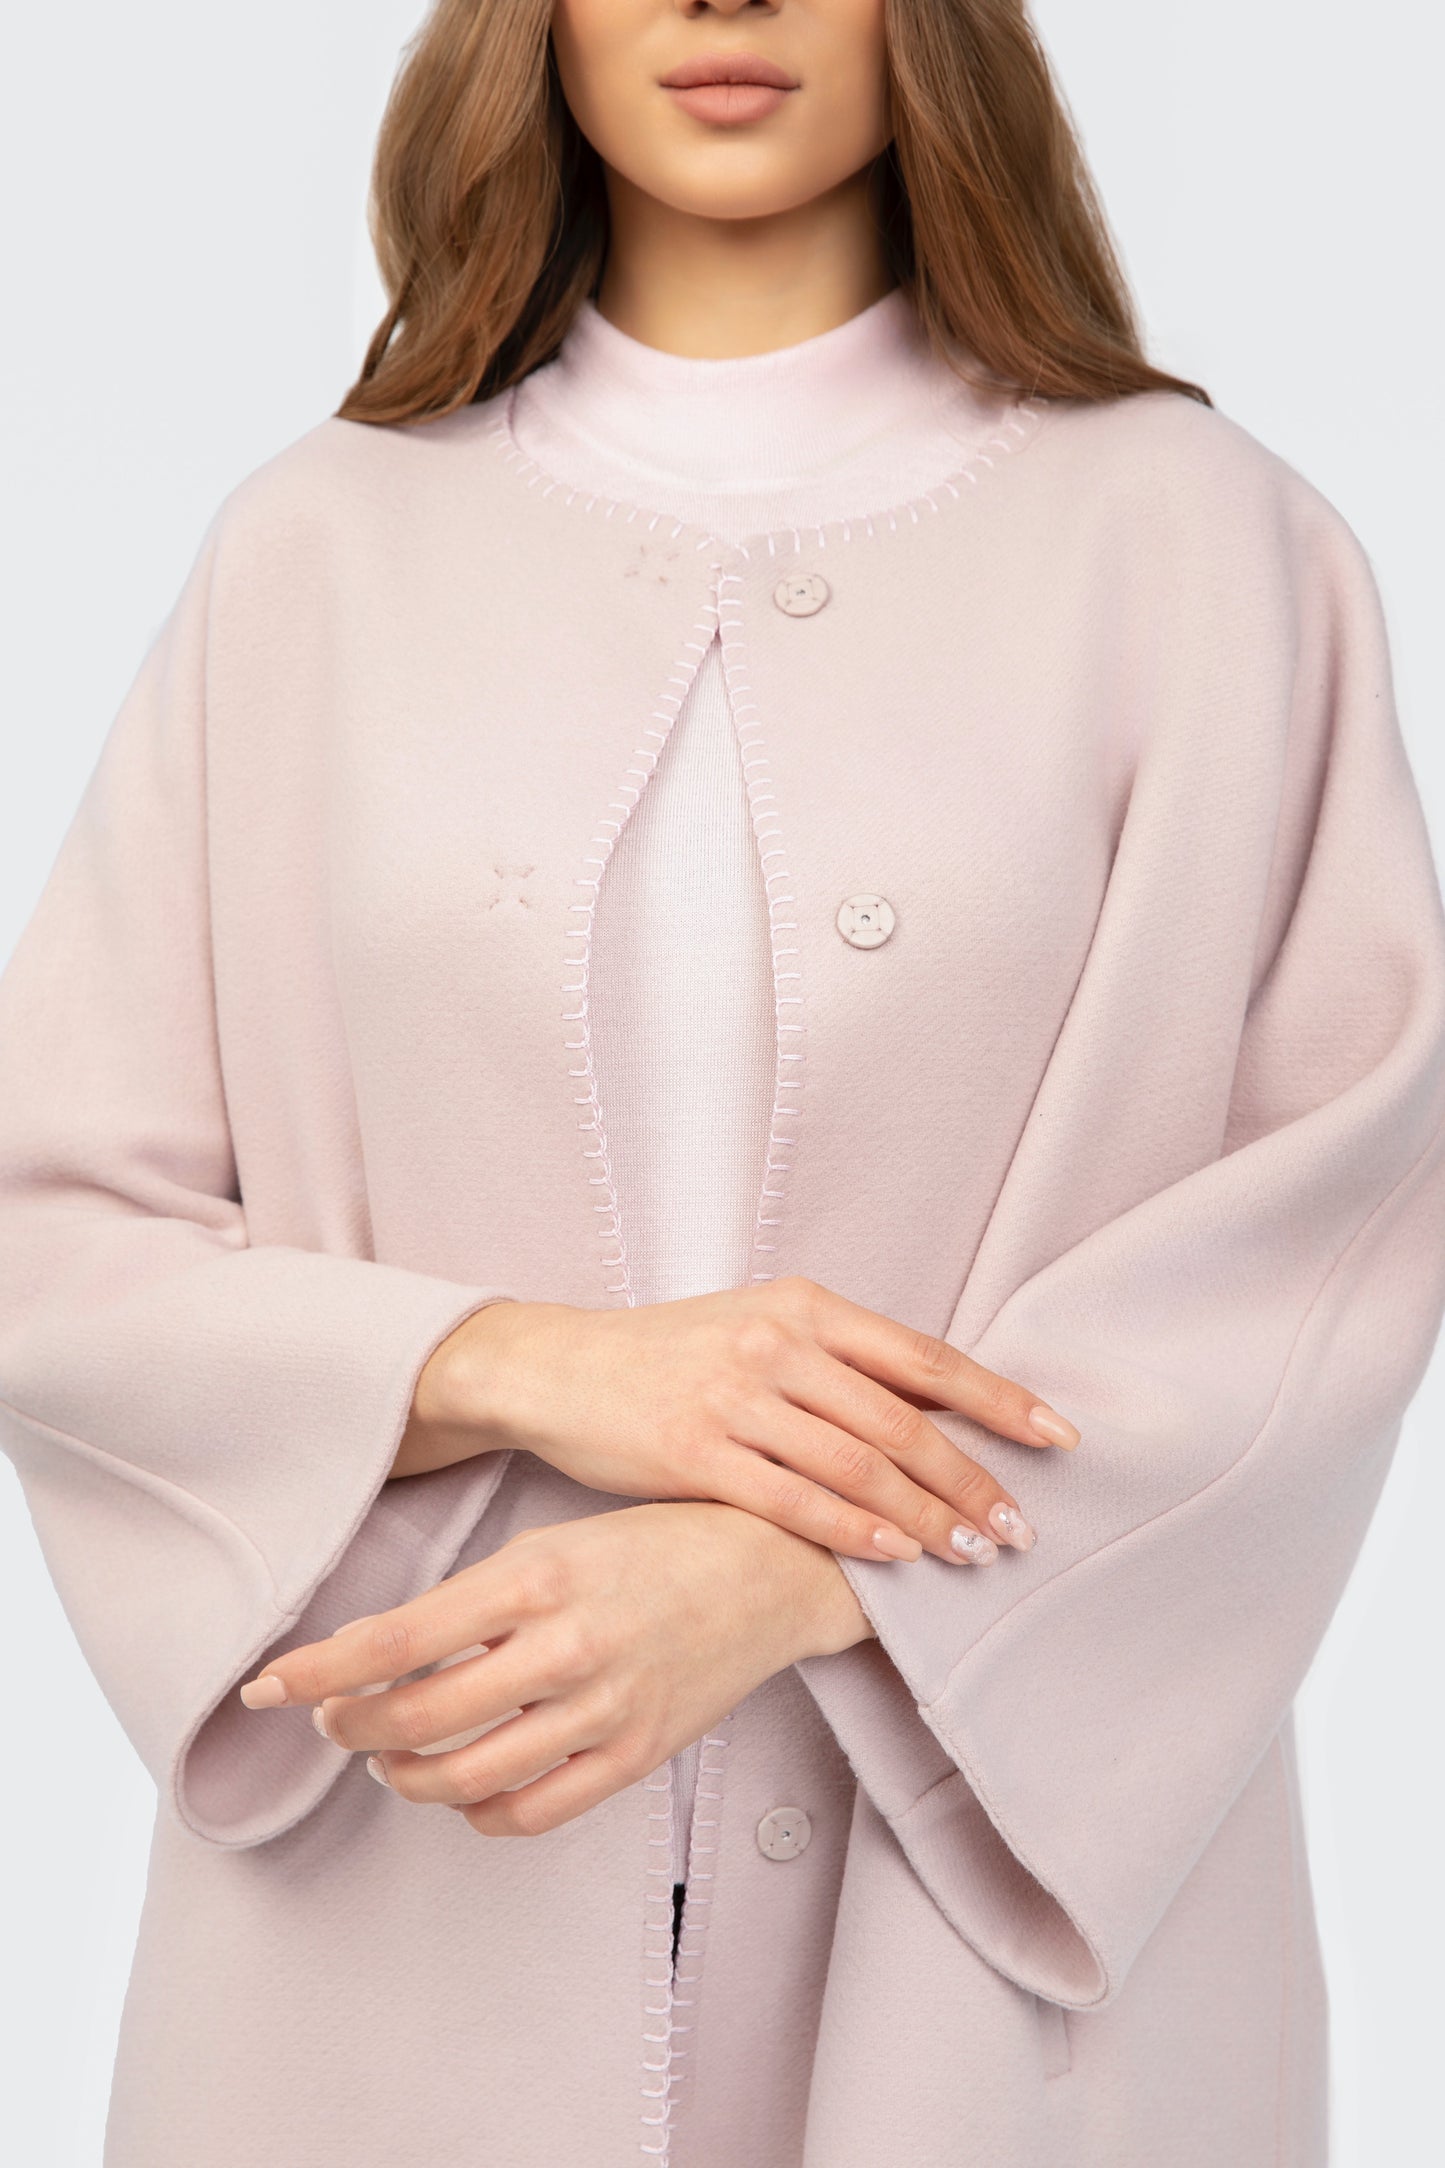 Light Pink Wool Overcoat